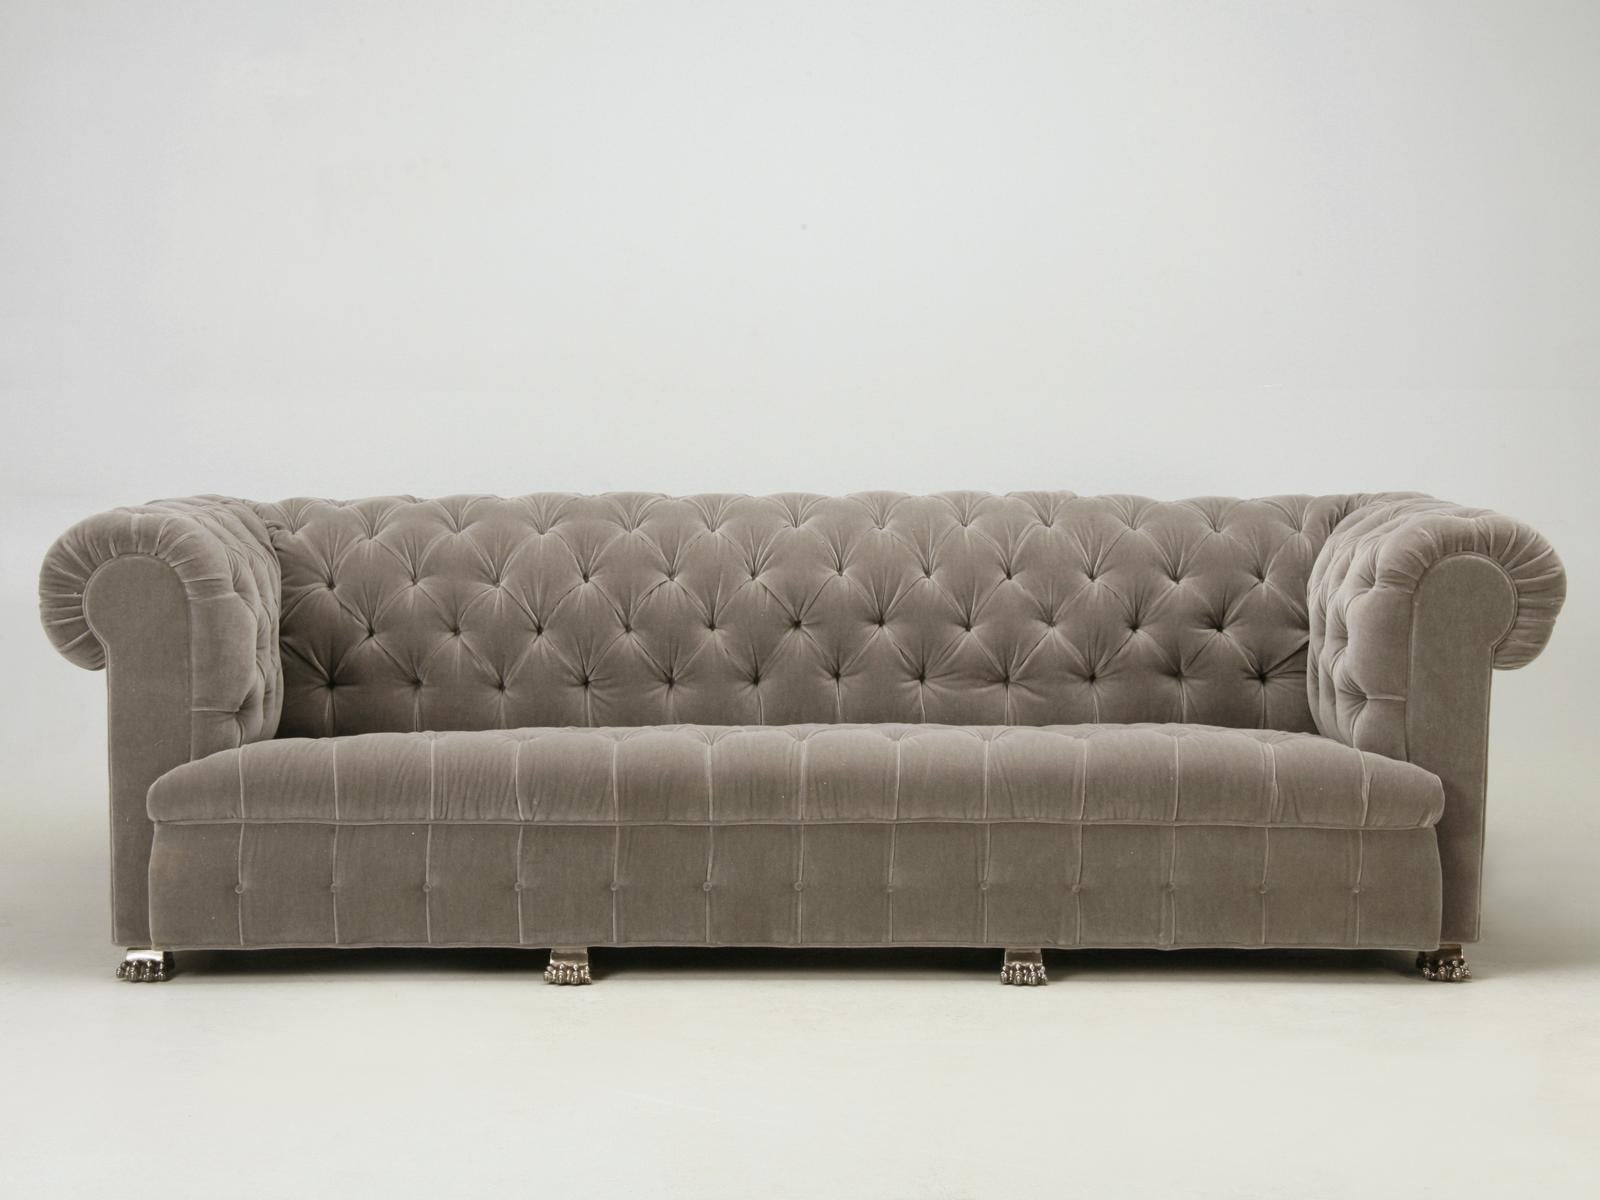 Maßgefertigtes, klassisches Chesterfield-Sofa mit vernickelten Füßen aus massiver Bronze, die ihm einen Hauch von französischem Flair verleihen. Wir haben dieses Sofa gerade mit einem weichen grauen Mohair aus 100 % Wolle gepolstert, alle 20 Yards